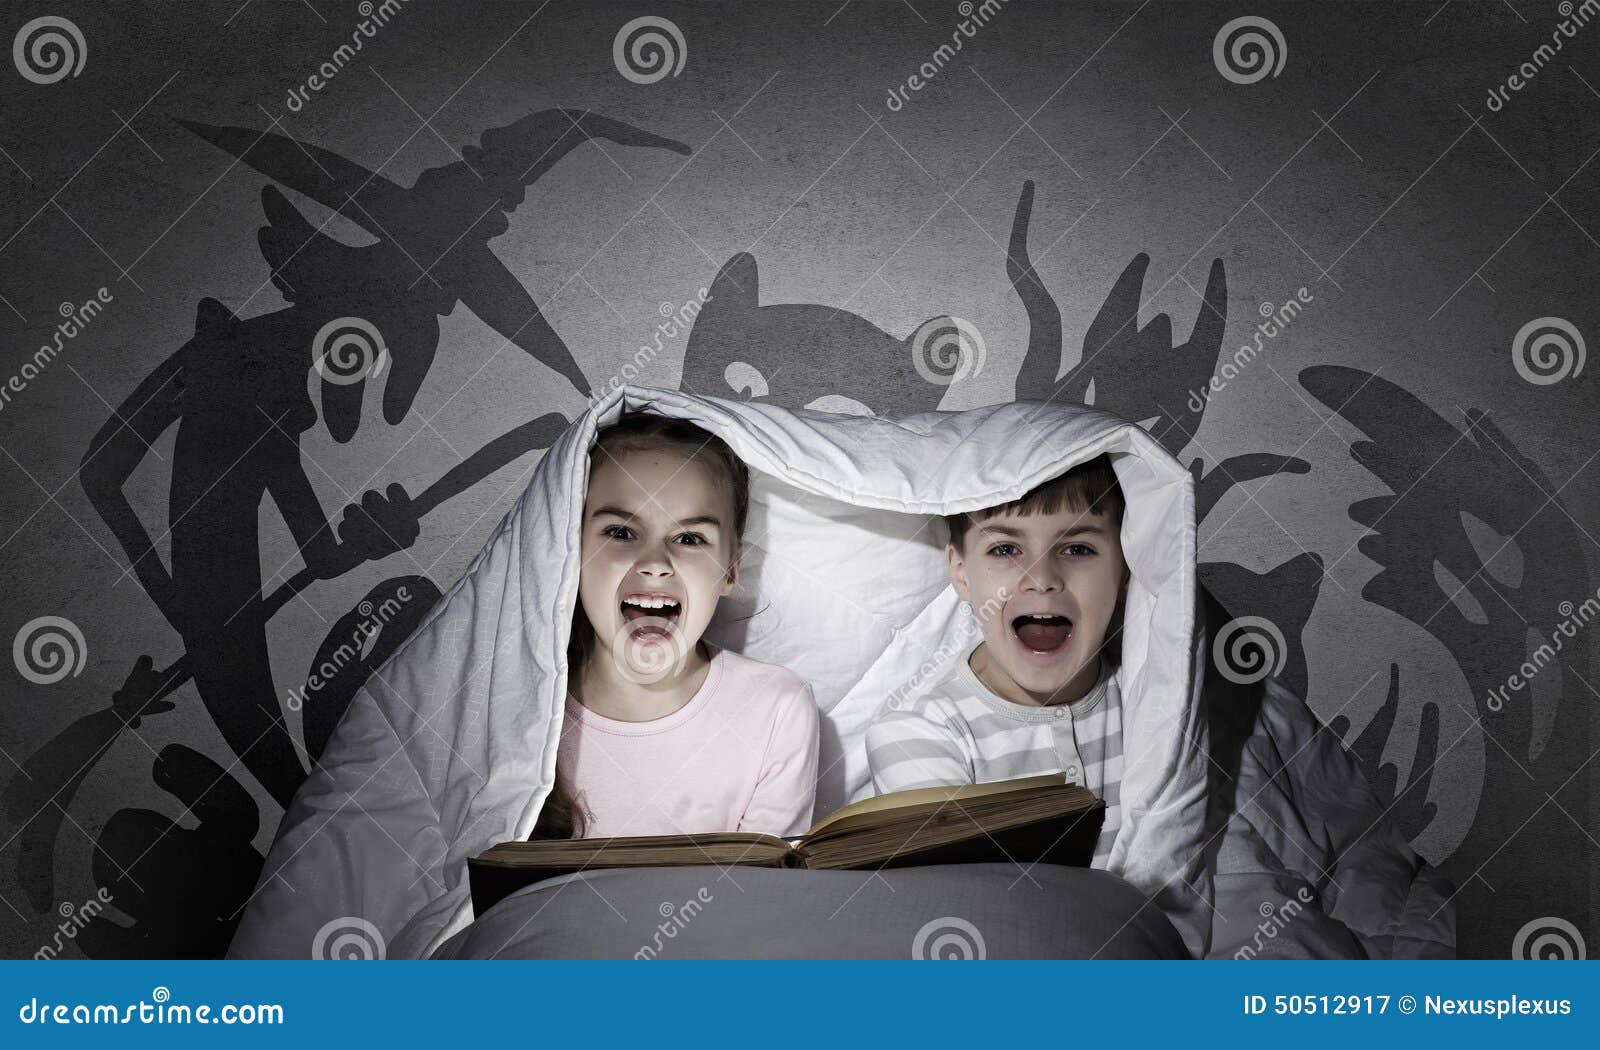 Children s nightmares stock image. Image of fear, blanket - 50512917